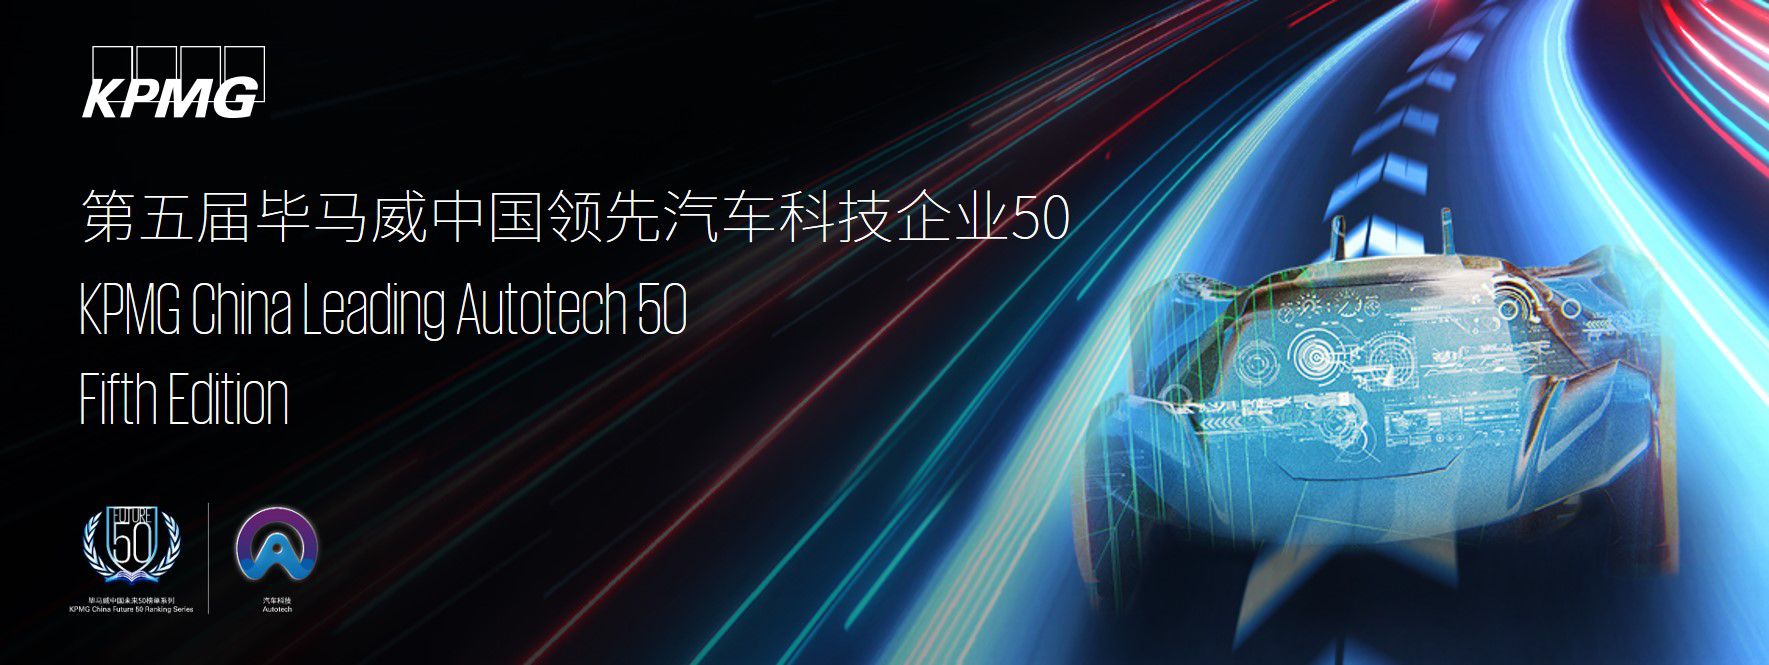 第五届中国领先汽车科技企业50评选